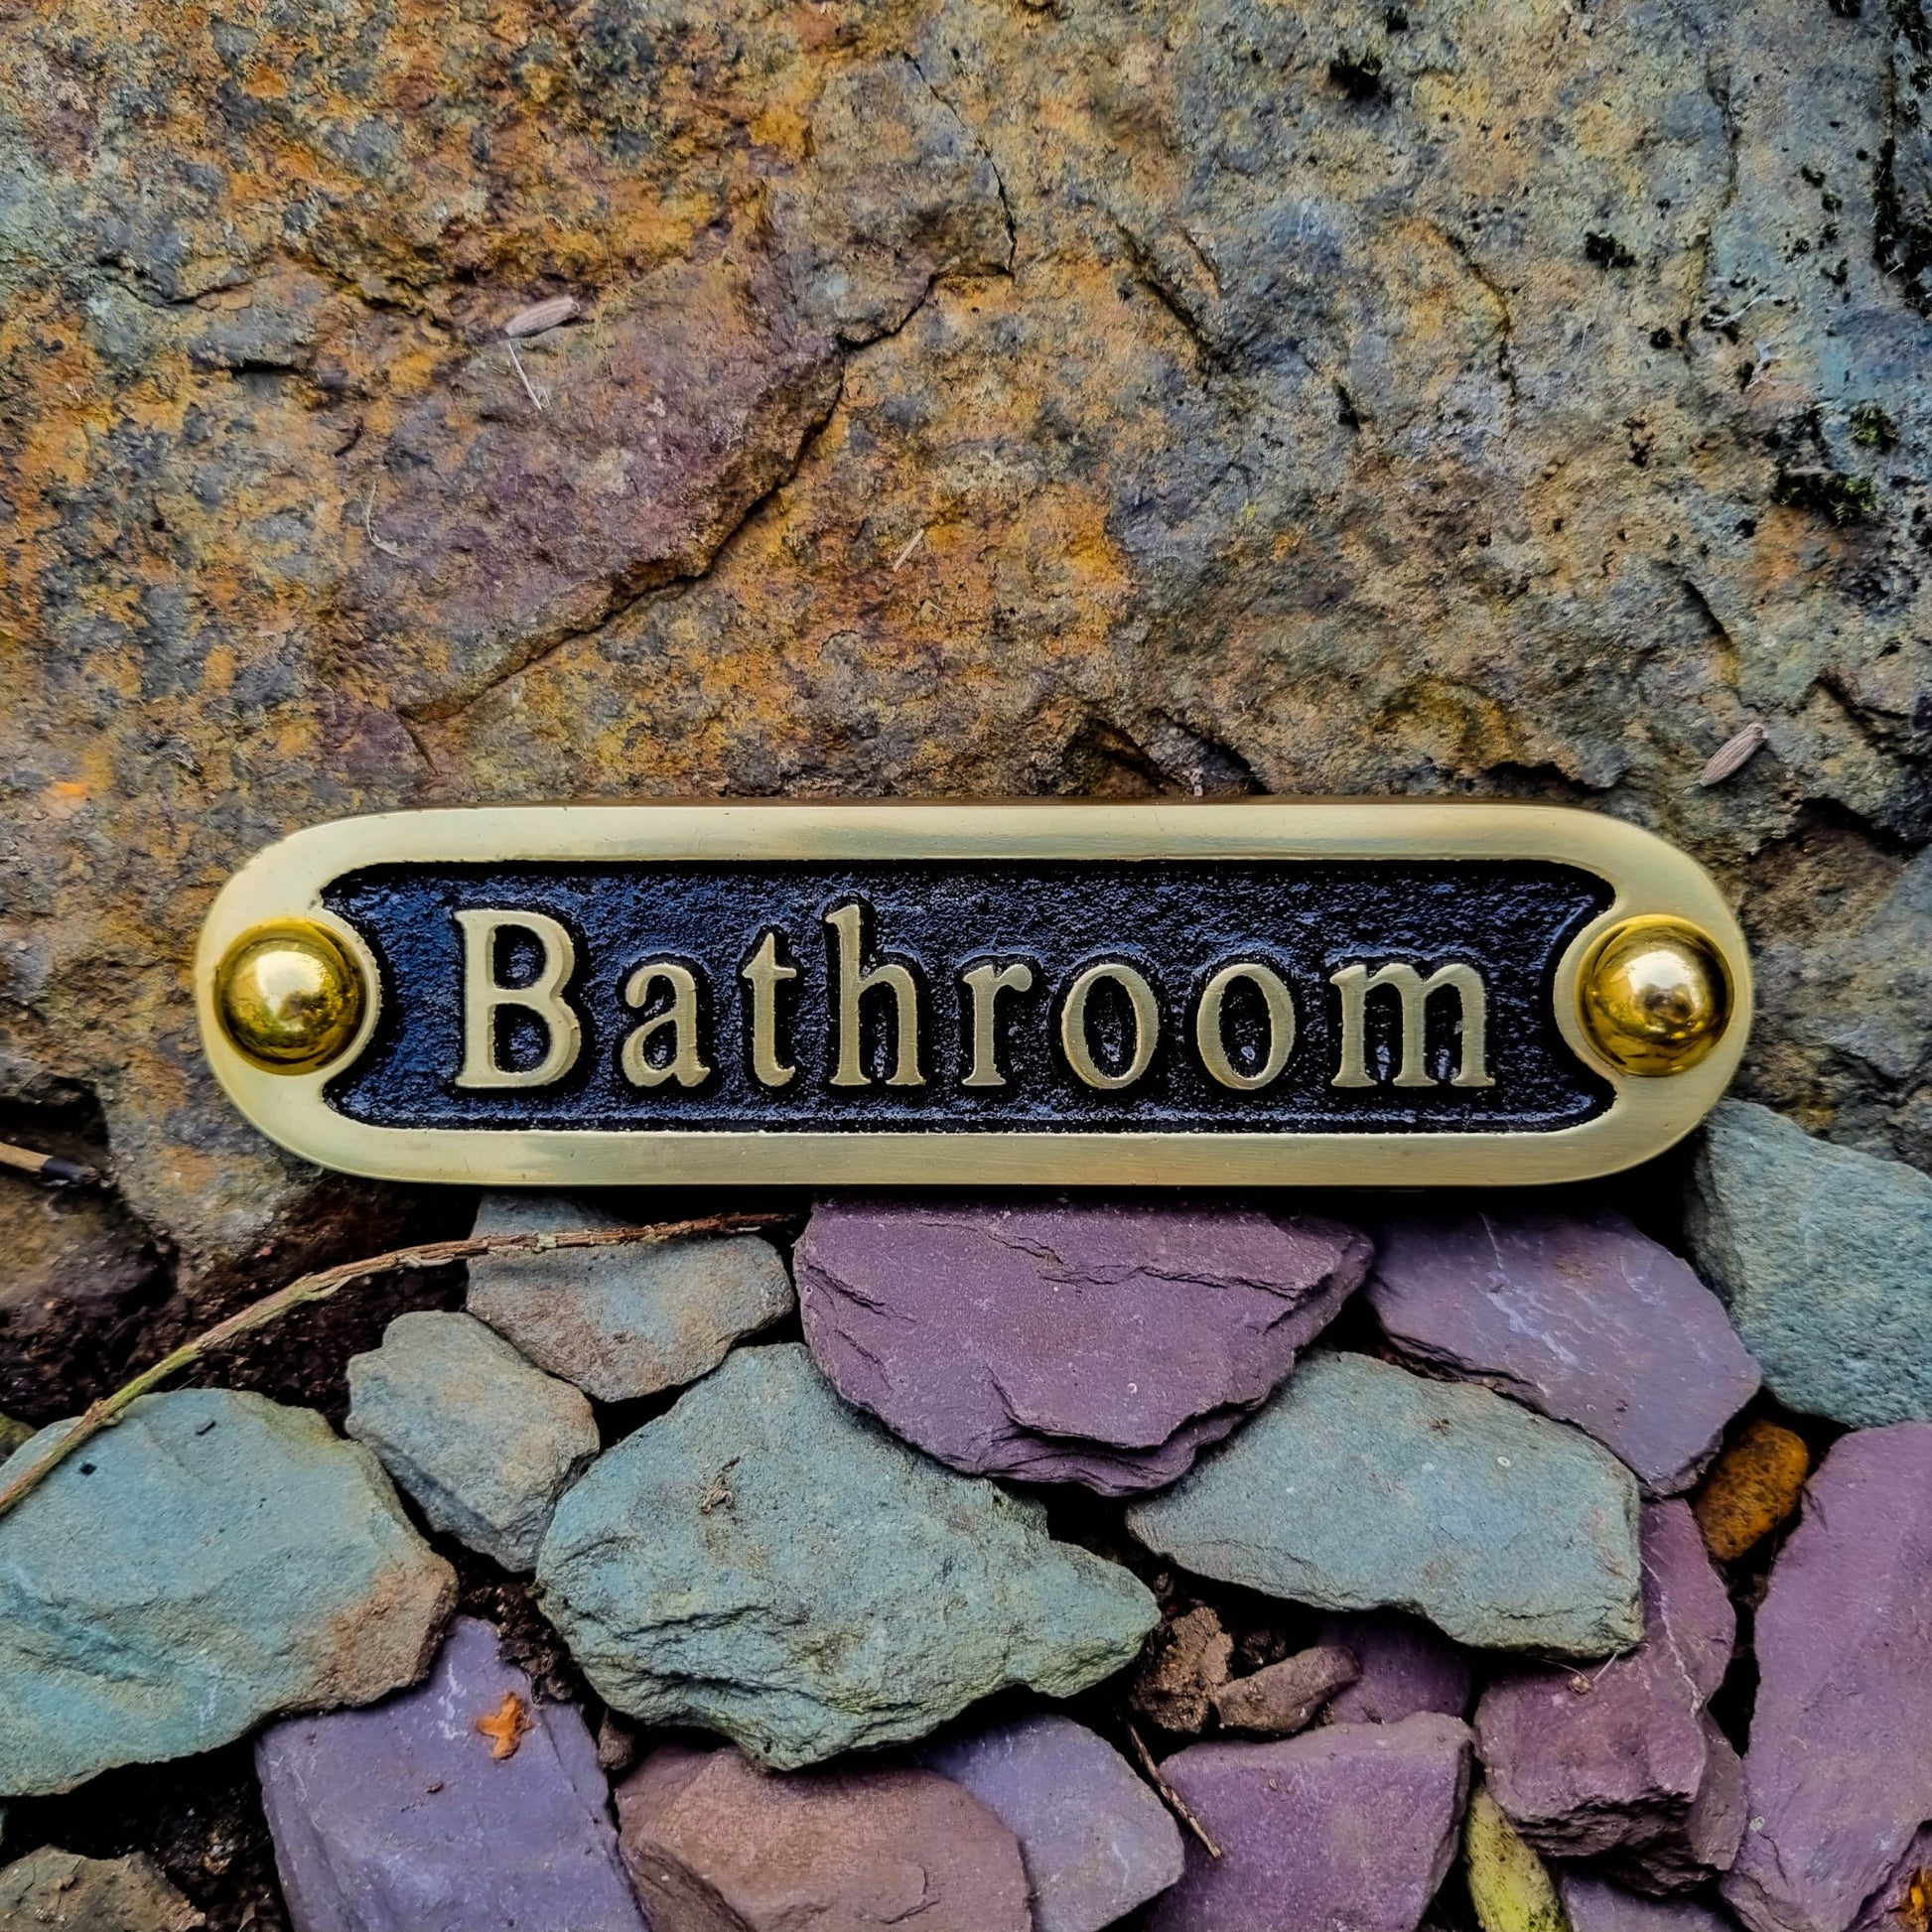 'Bathroom' Door Sign - The Metal Foundry